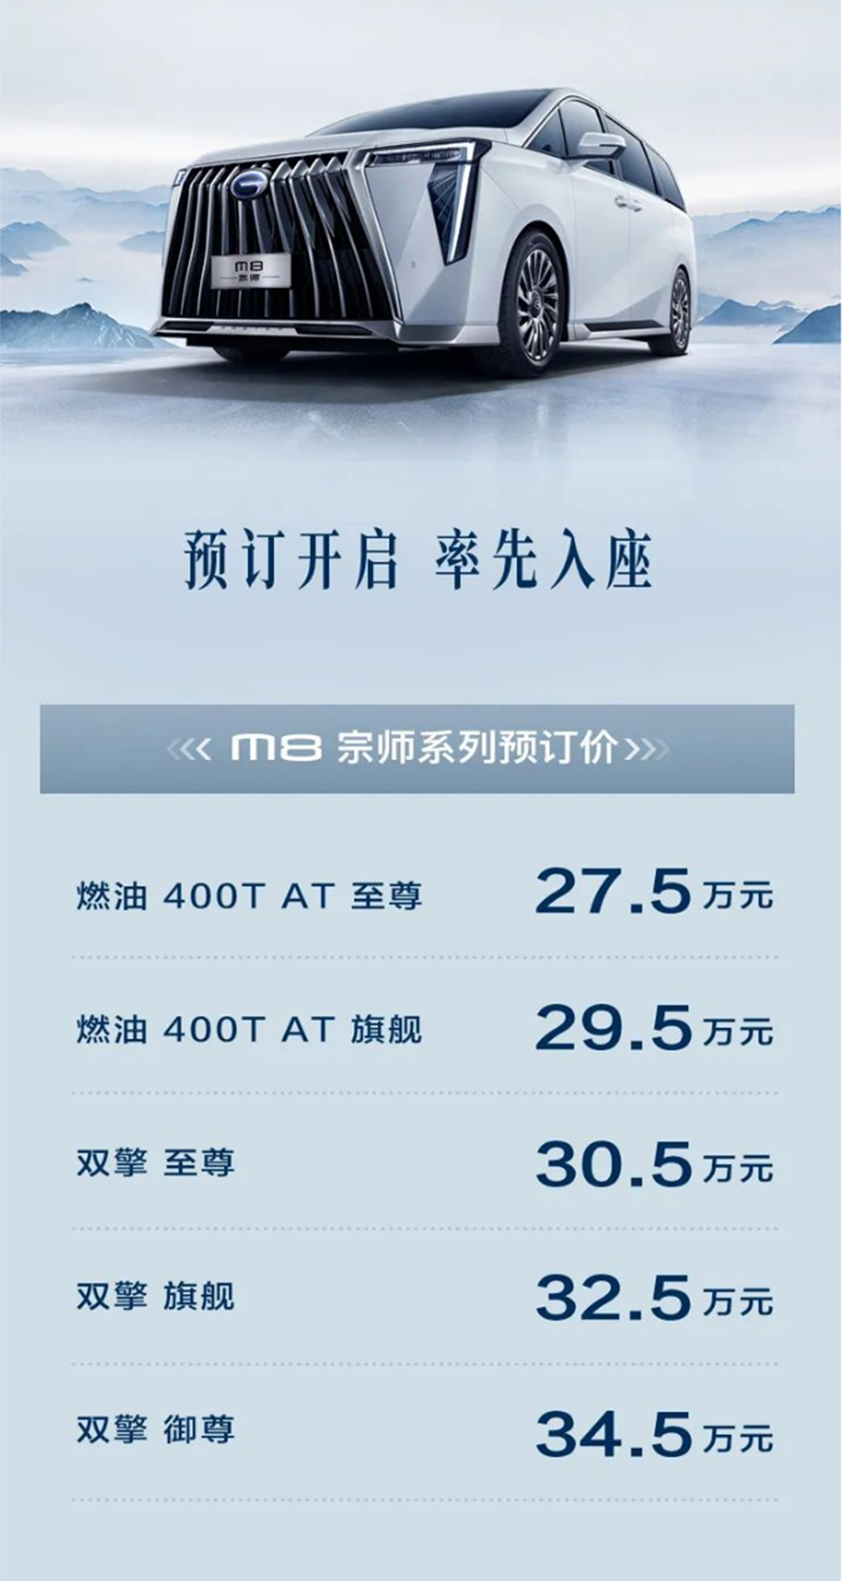 全新传祺M8宗师系列预售 27.5-34.6万元